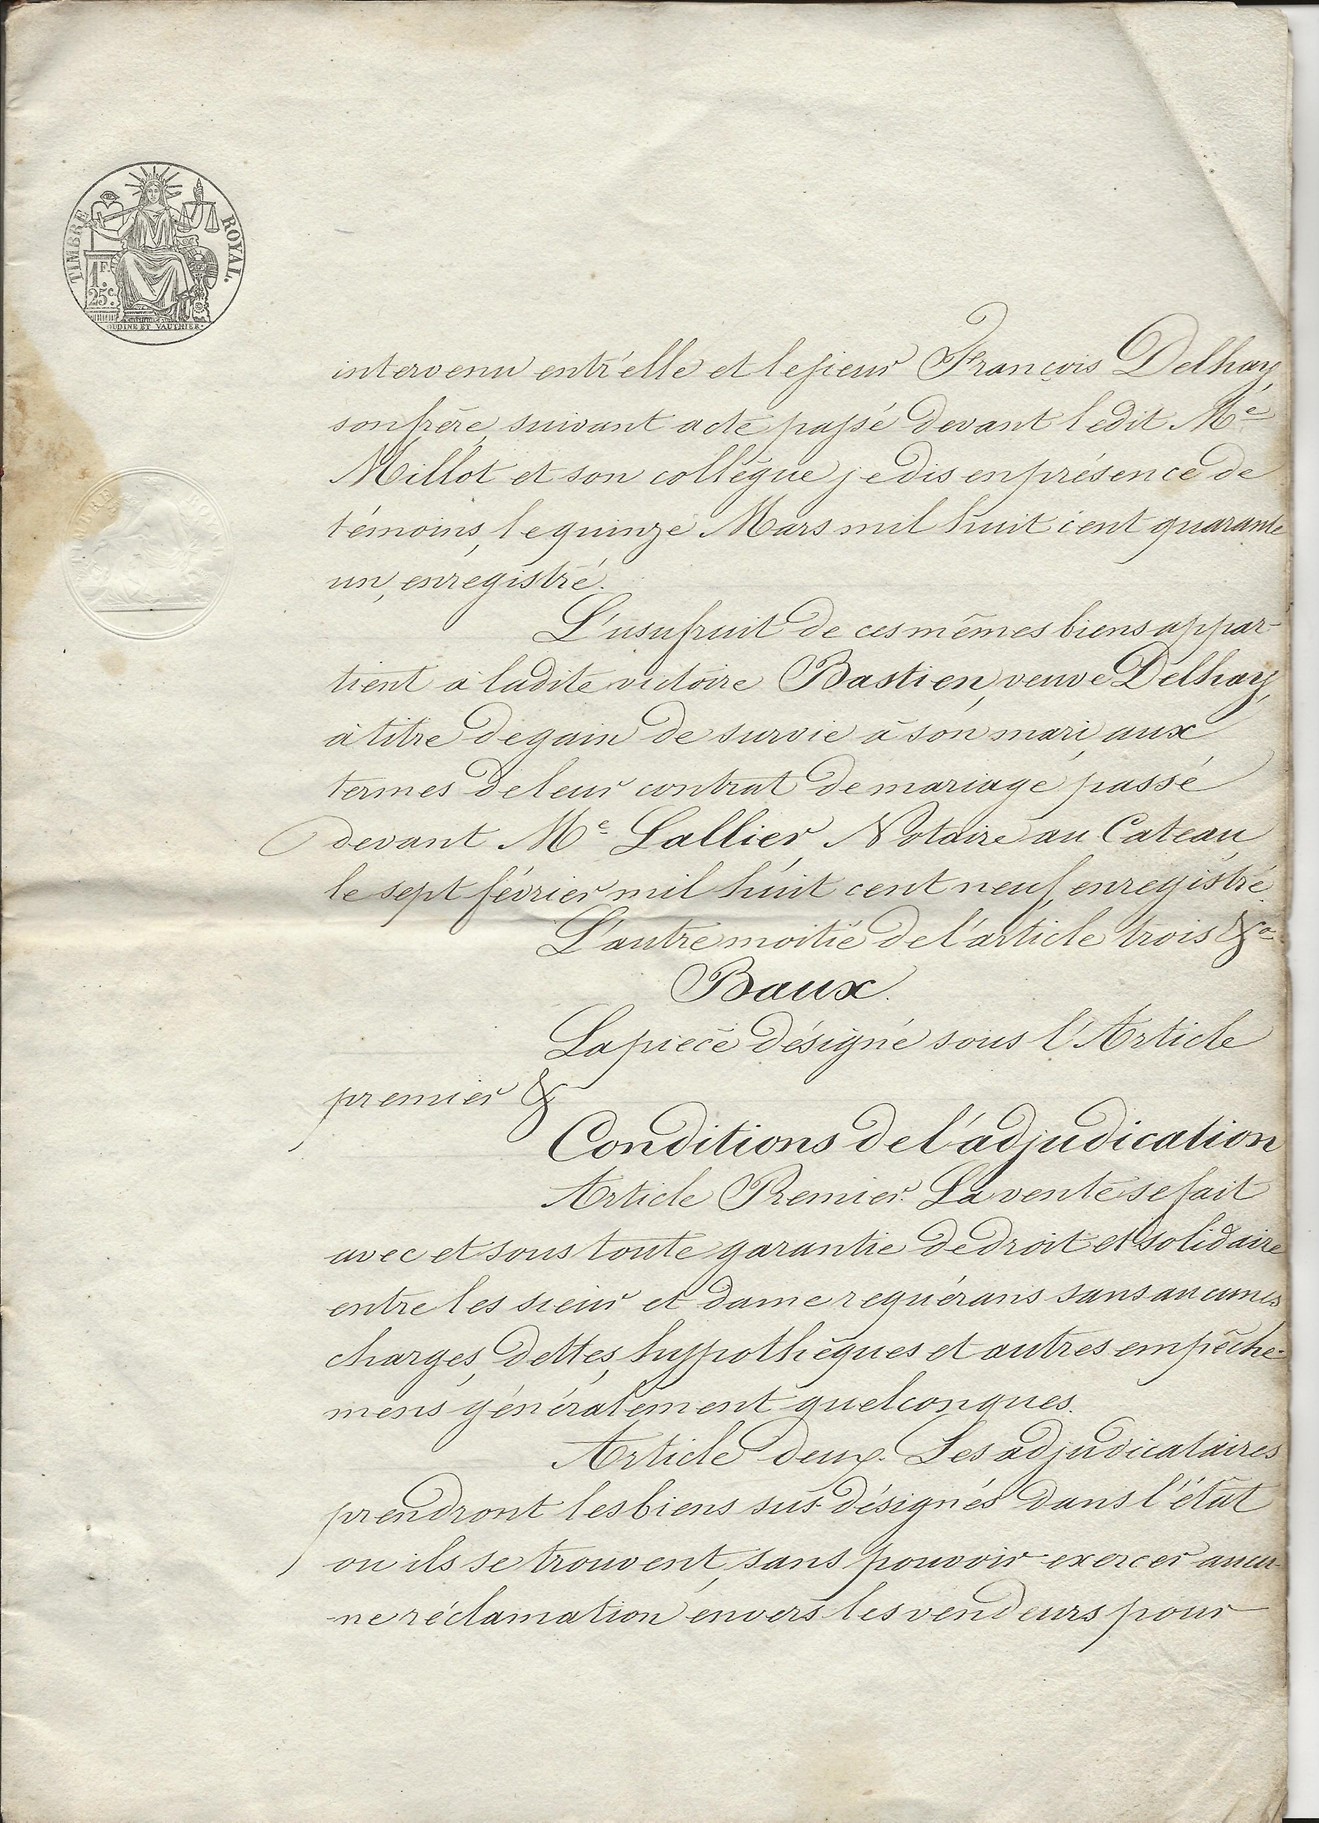 1847 adjudication terres lanciaux pruvot 003